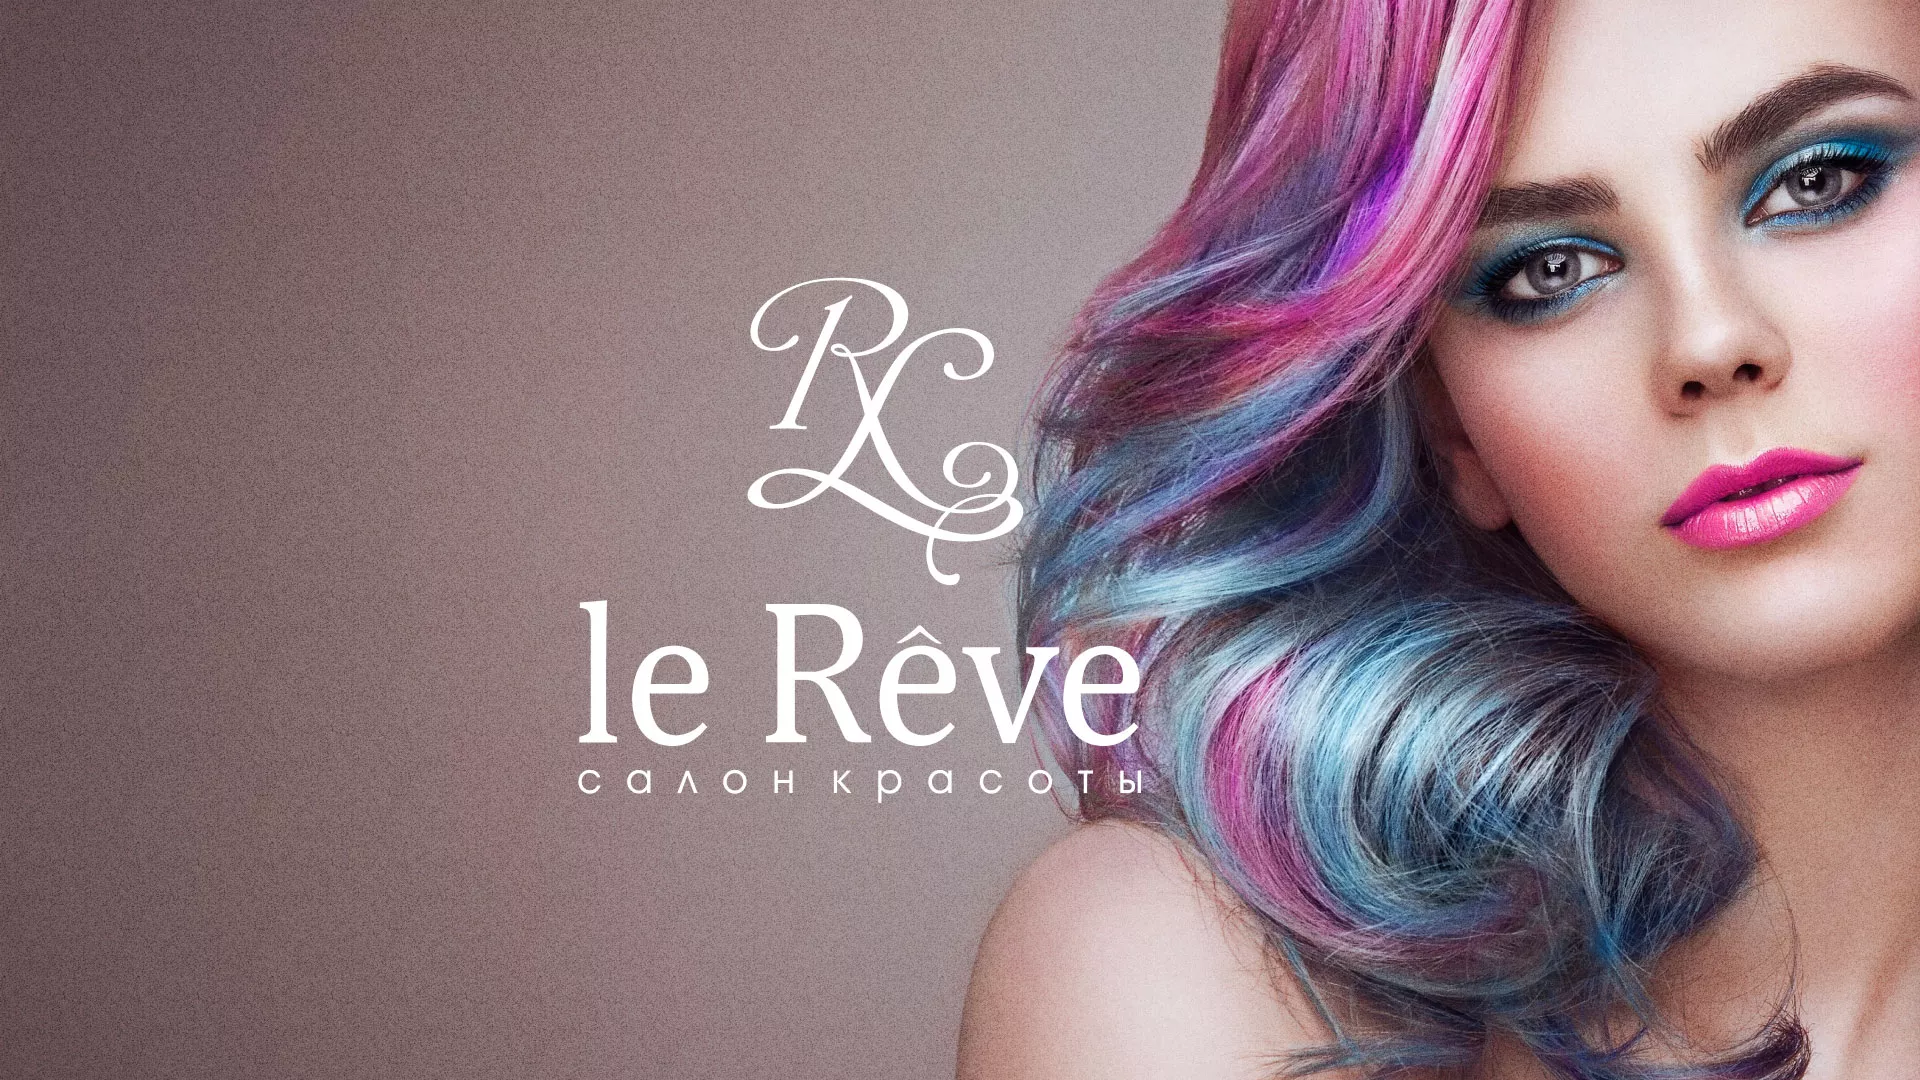 Создание сайта для салона красоты «Le Reve» в Иваново